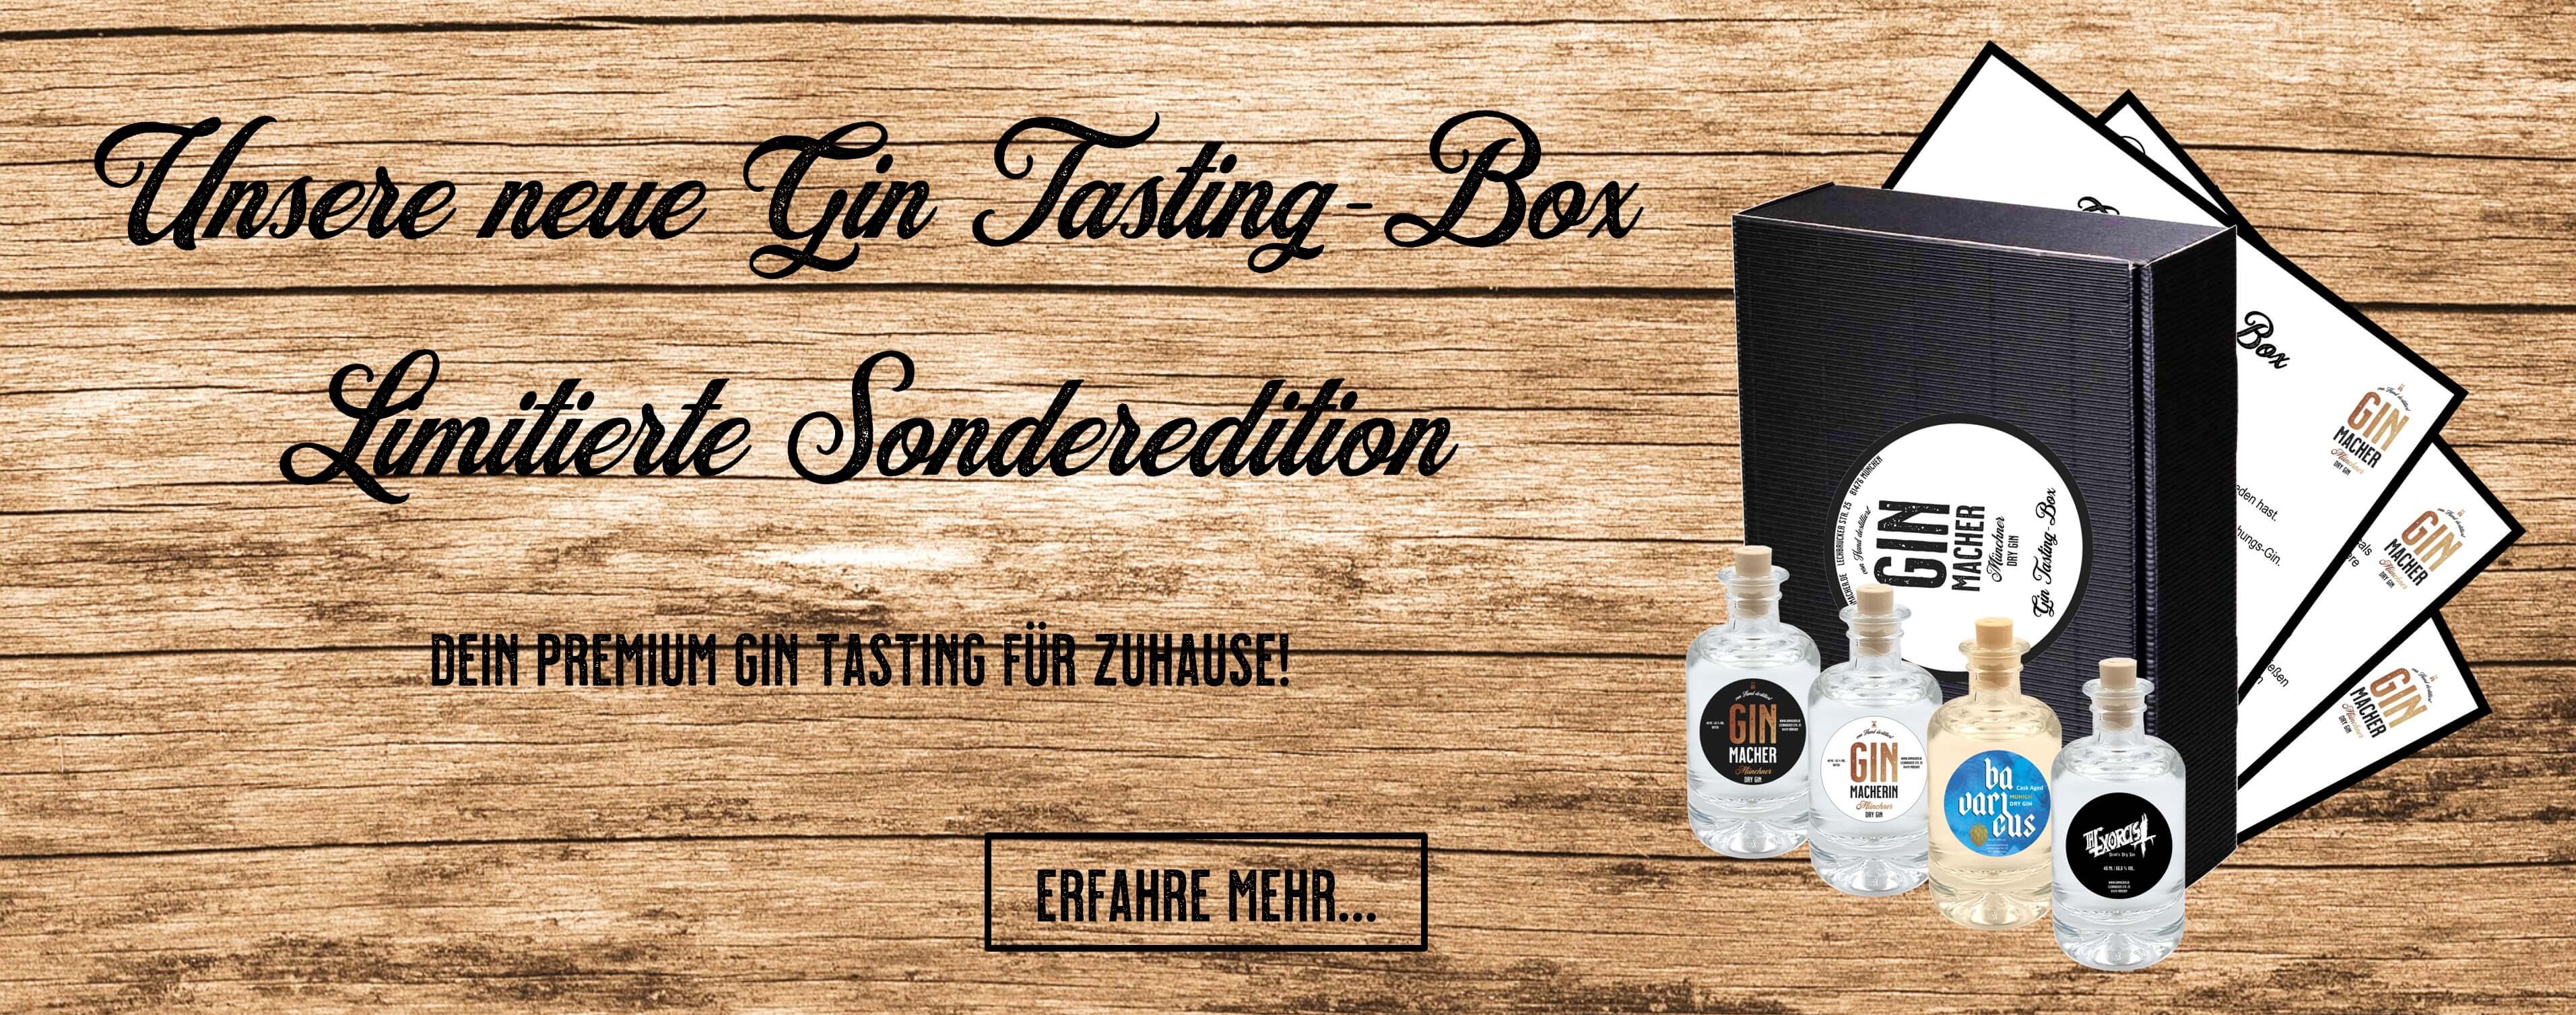 Ginmacher München - Gin Tasting-Box limitierte Sonderedition